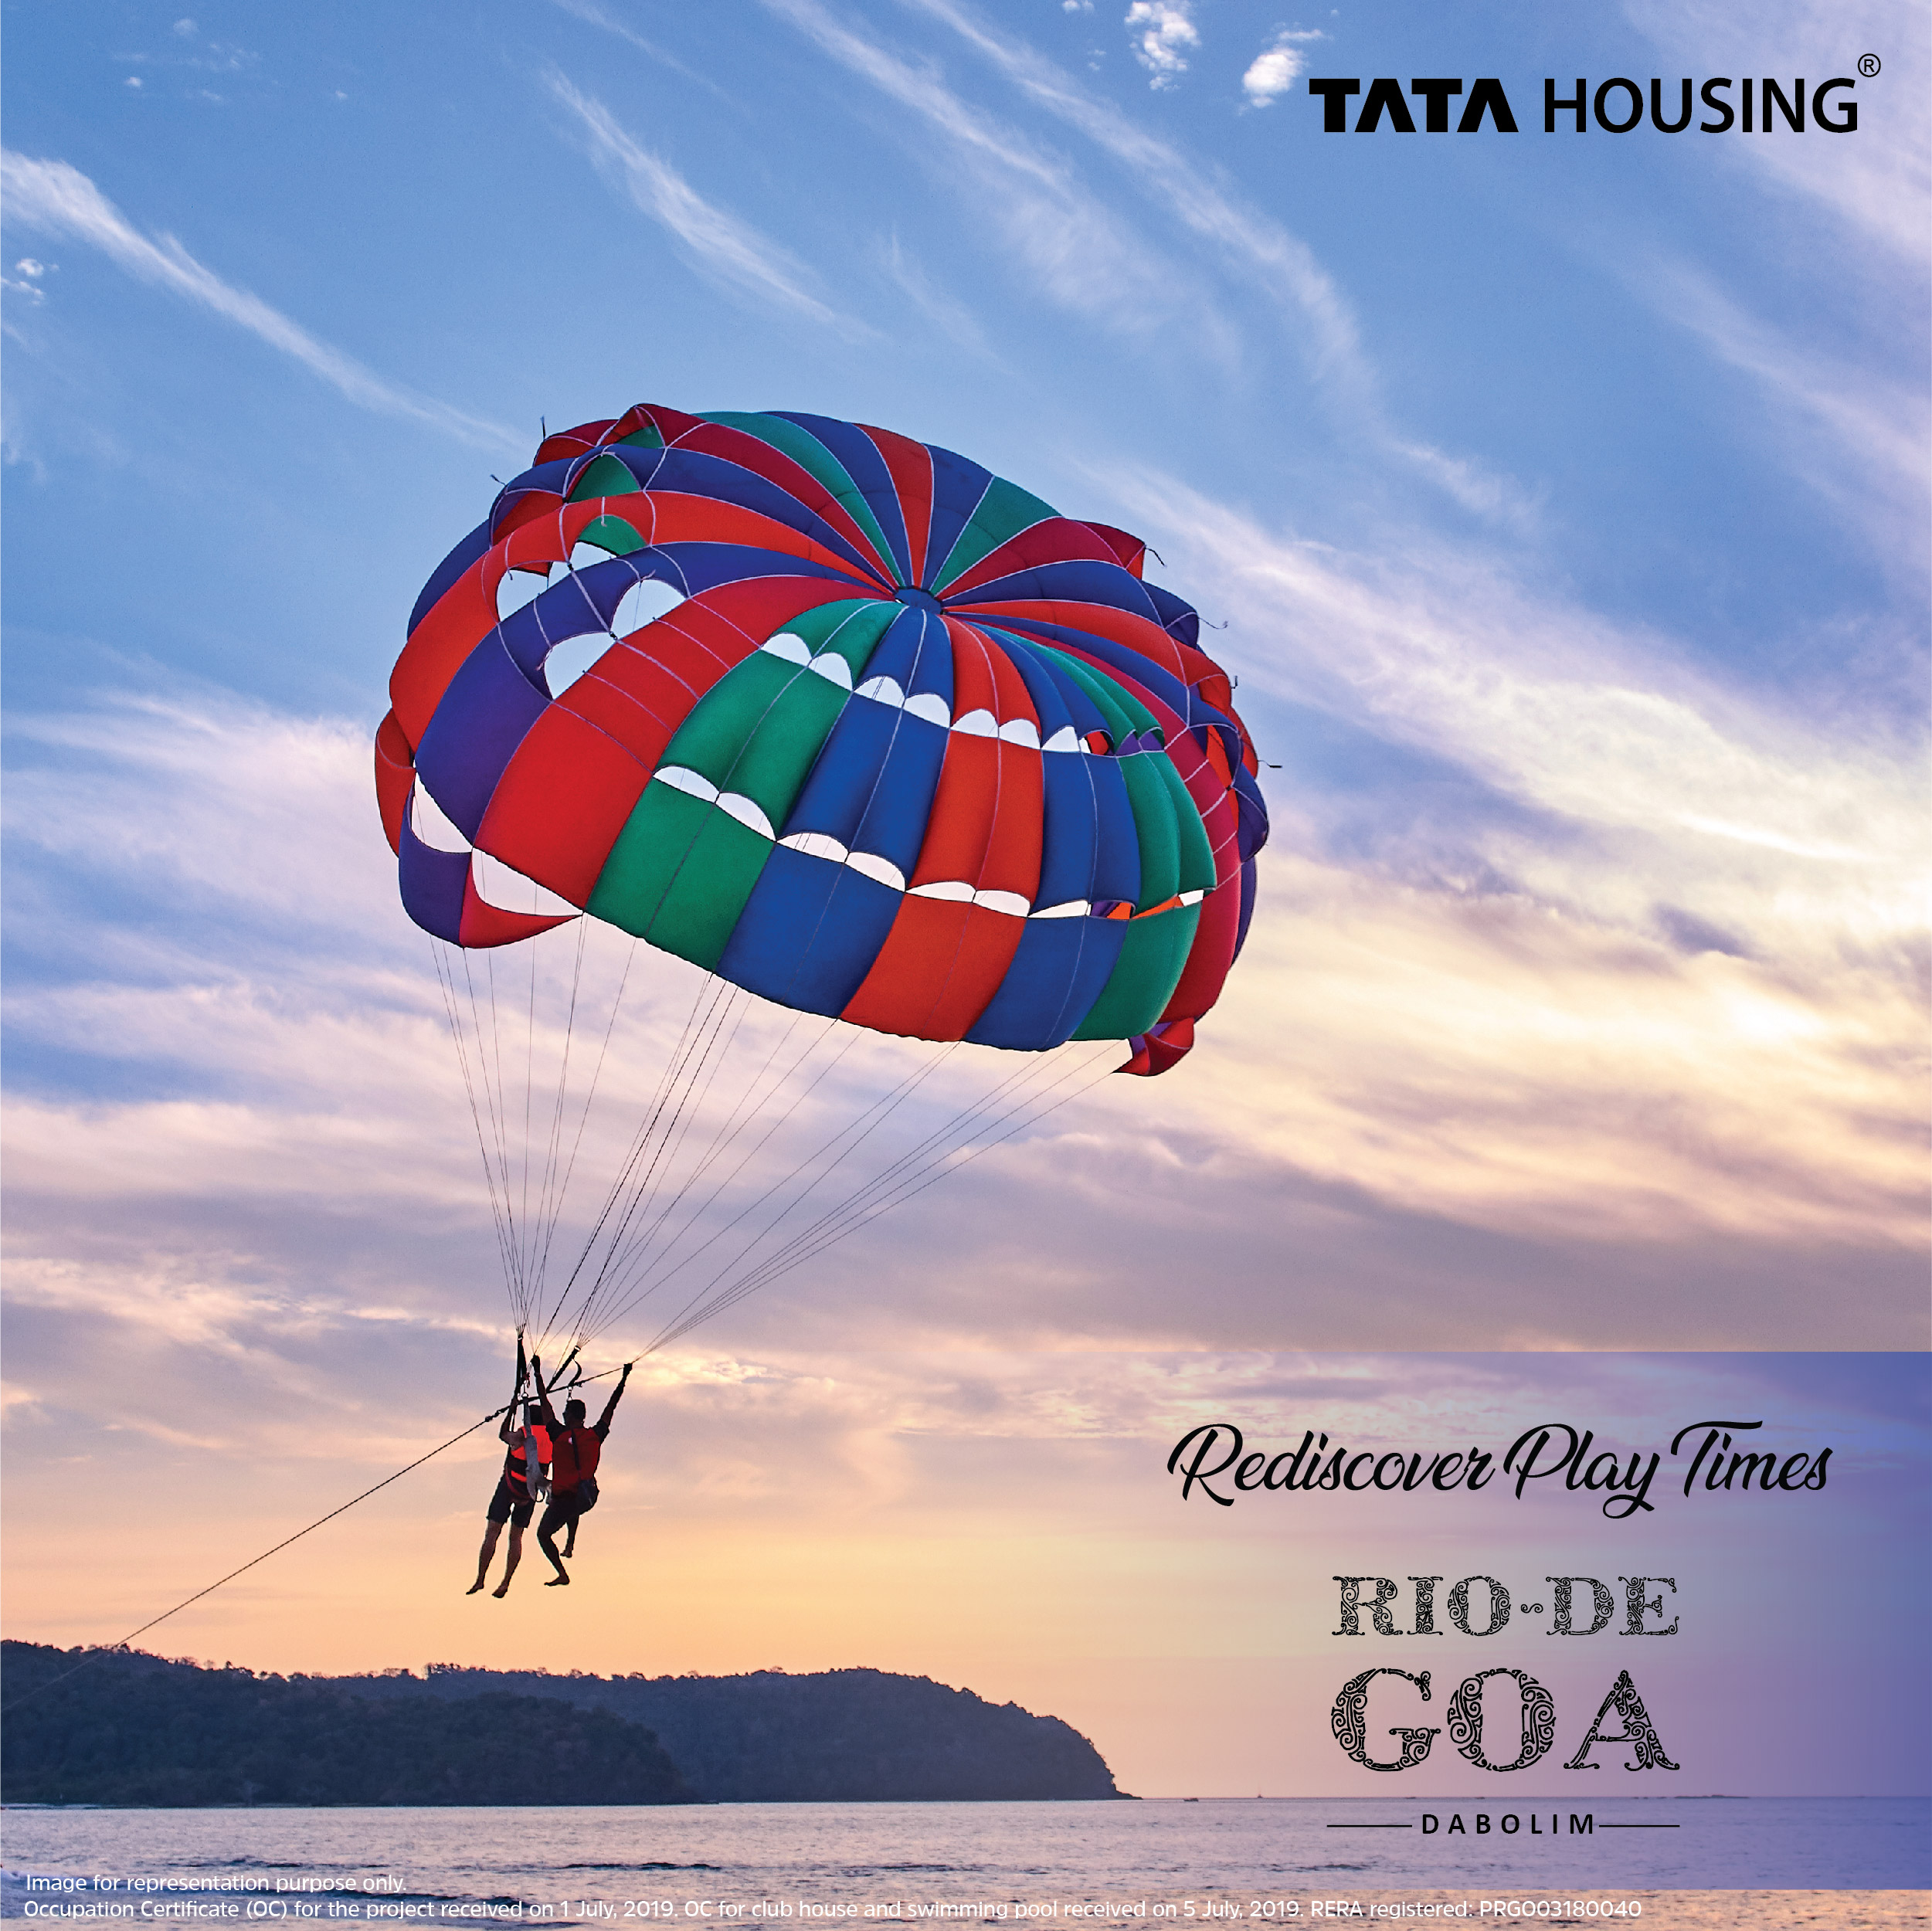 Rediscover play times at Tata Rio De Goa in Dabolim, Goa Update